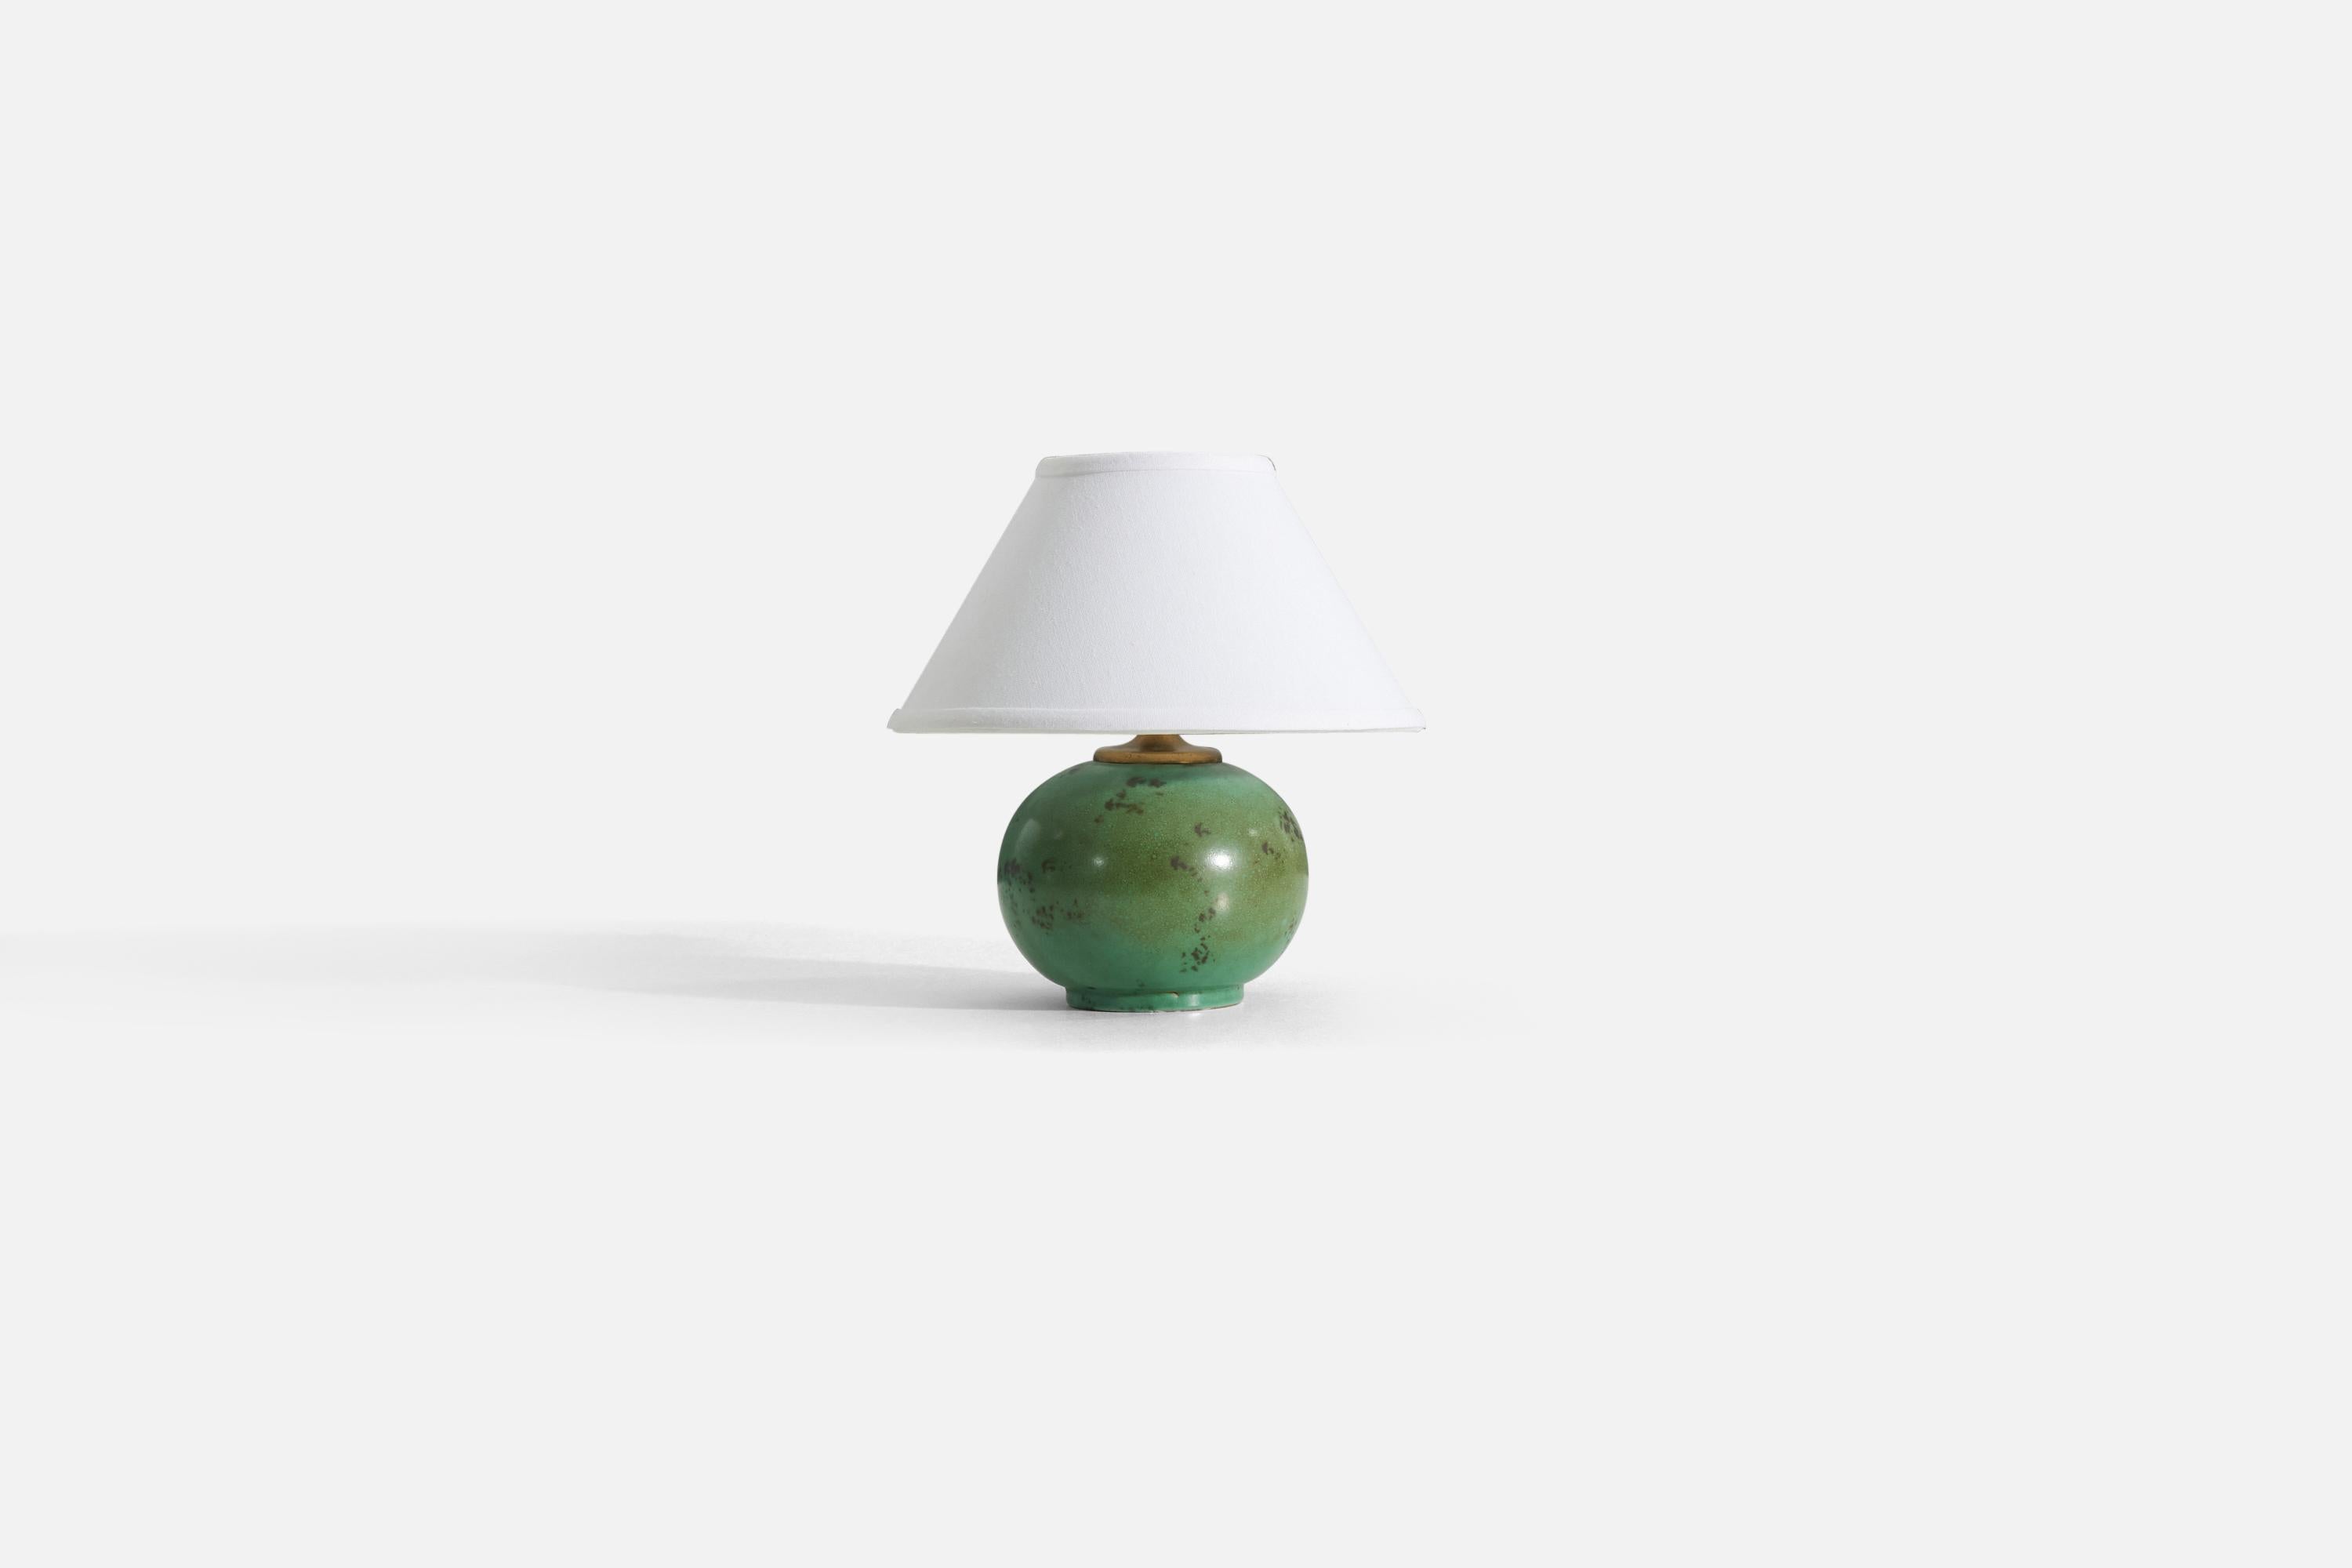 Modernistische Tischlampe aus grün glasiertem Steingut von Upsala-Ekeby, Schweden, 1930er Jahre.

Die angegebenen Maße beziehen sich auf die Lampe. Verkauft ohne Lampenschirm.

Zum Vergleich

Schirm : 4,5 x 10,25 x 6
Lampe mit Schirm : 10,5 x